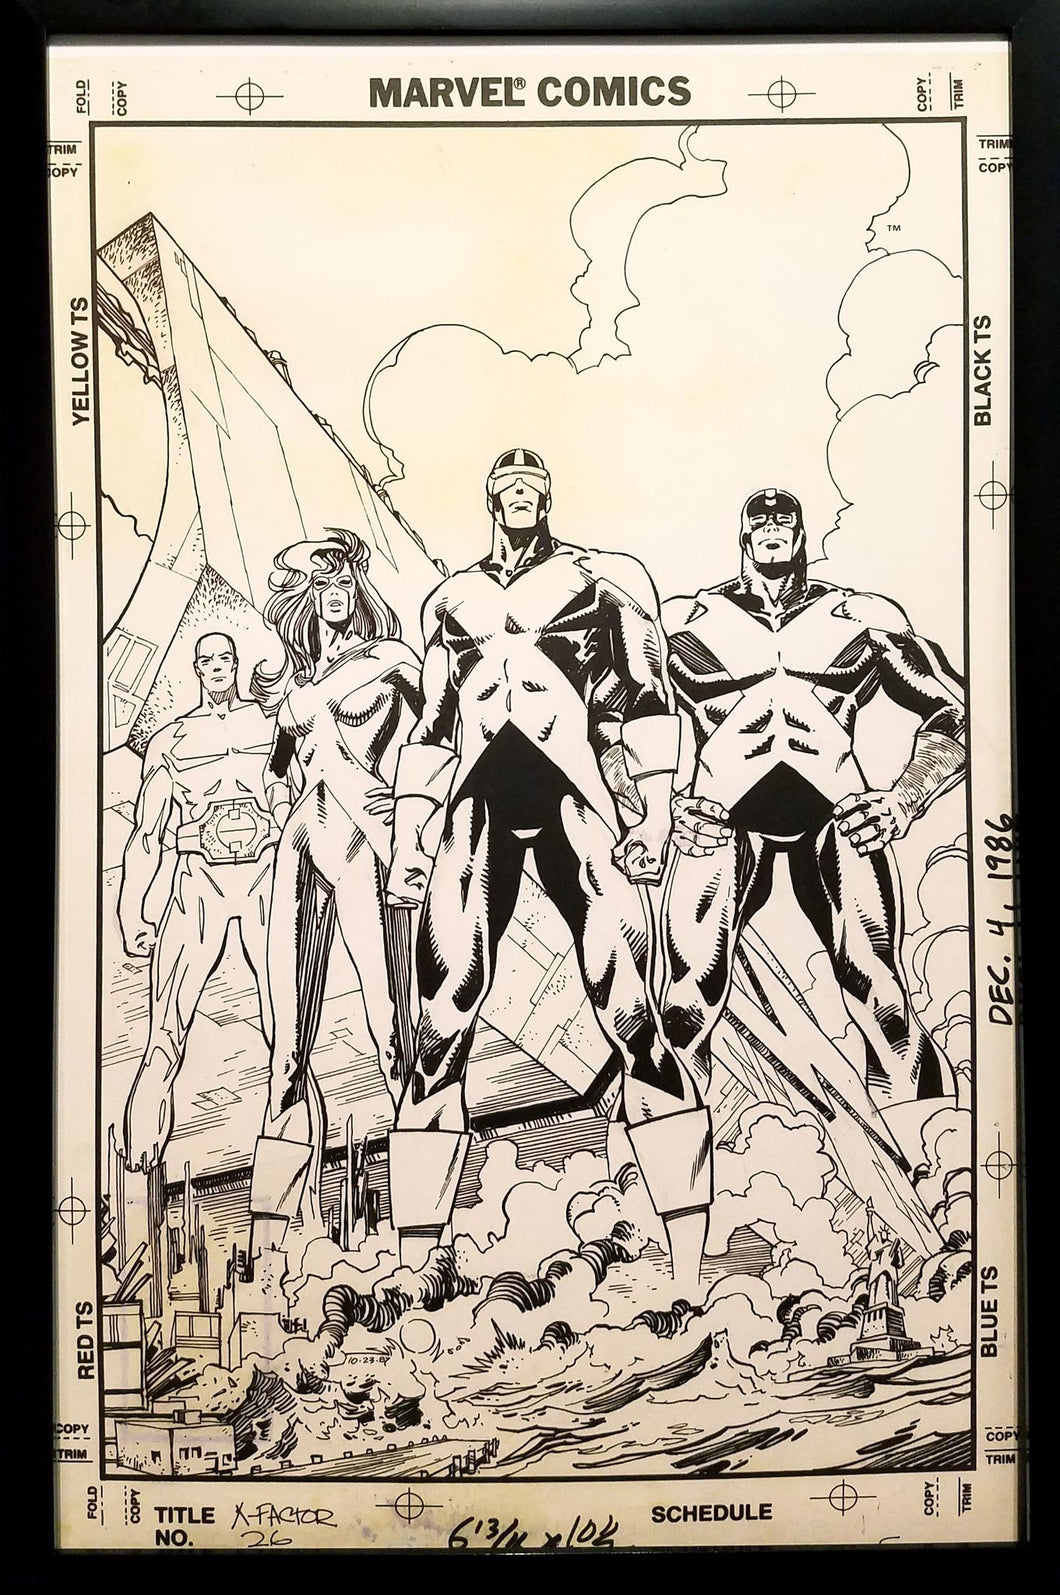 X-Factor #26 by Walter Simonson 11x17 FRAMED Original Art Poster Marvel Comics